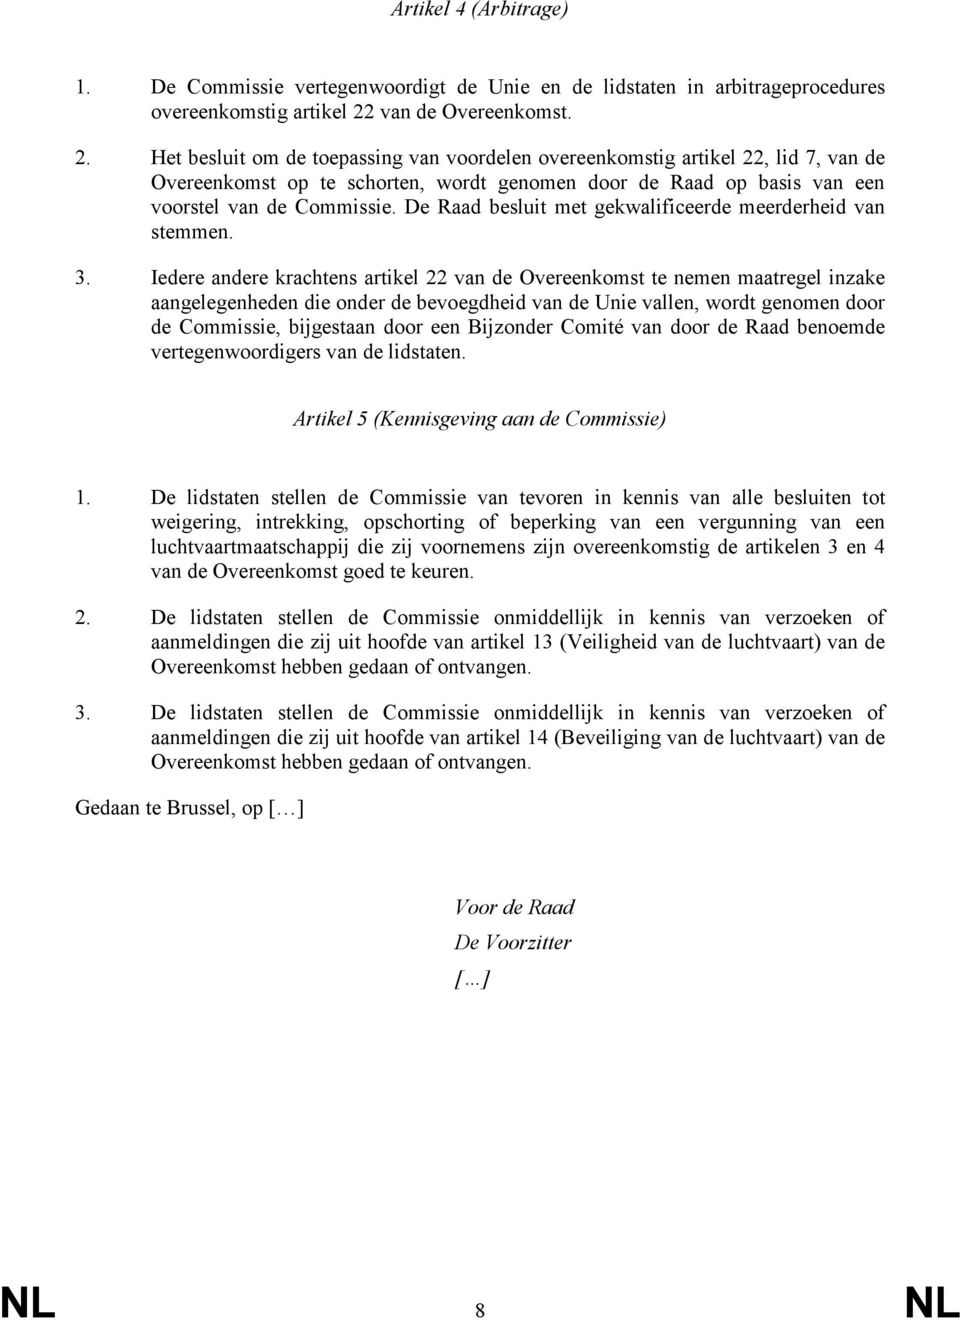 Het besluit om de toepassing van voordelen overeenkomstig artikel 22, lid 7, van de Overeenkomst op te schorten, wordt genomen door de Raad op basis van een voorstel van de Commissie.